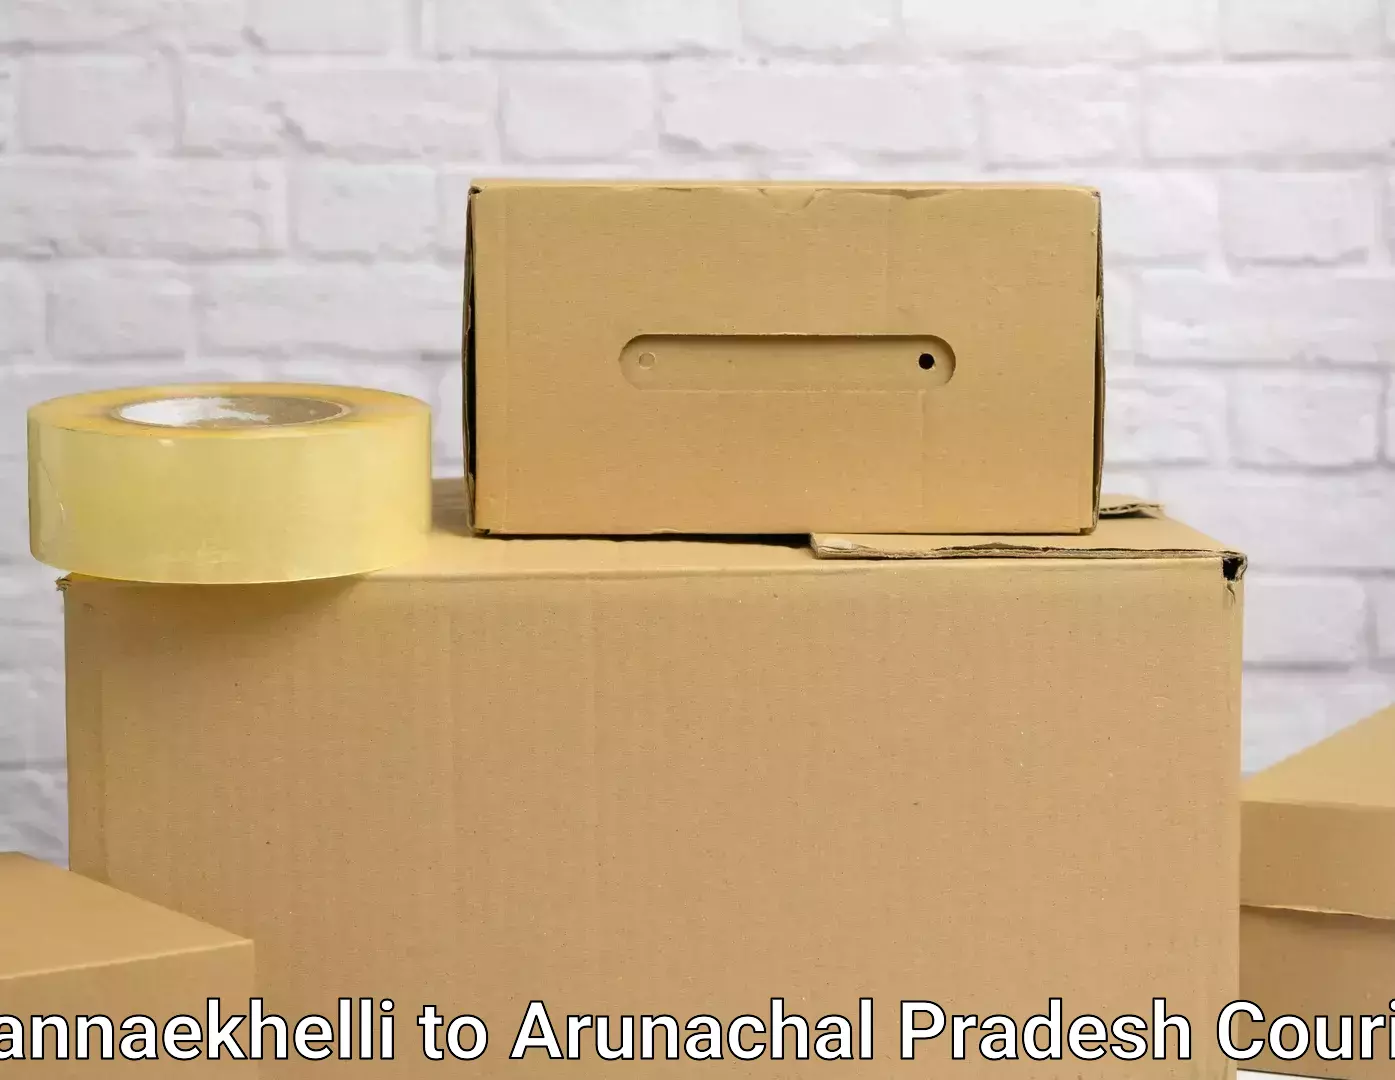 Efficient furniture transport Mannaekhelli to Arunachal Pradesh